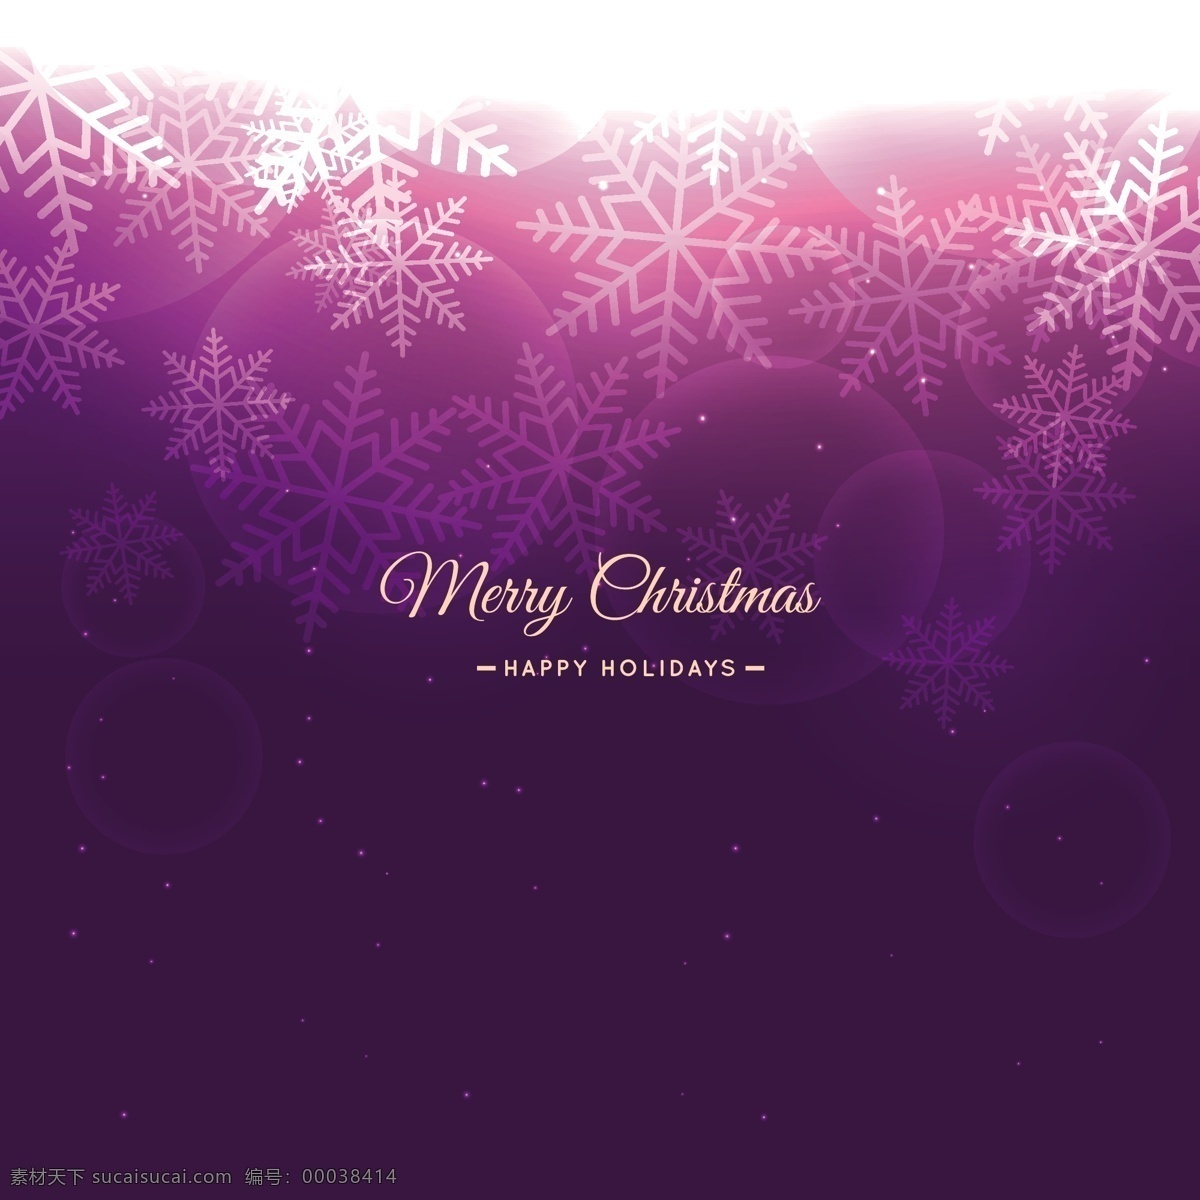 紫色 圣诞 雪花 背景 圣诞节 圣诞快乐 冬天 庆祝节日 背景虚化 节日快乐 季节 节日 十二月